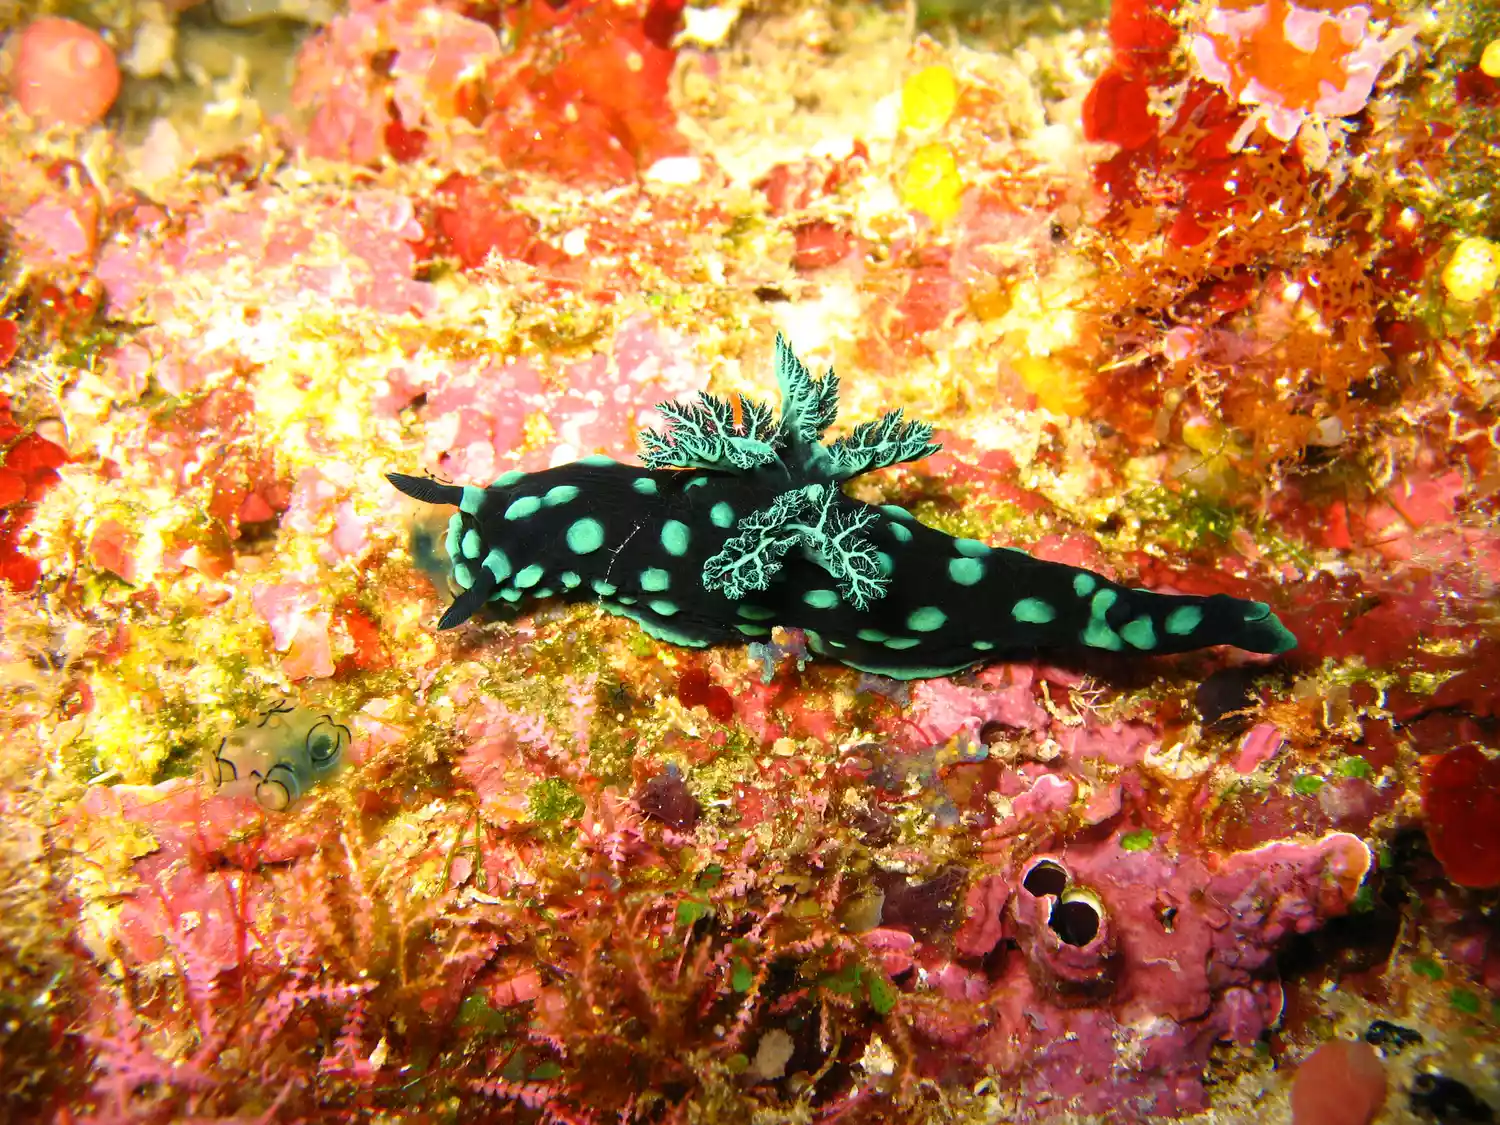 Черно-зеленый пятнистый морской слизняк на желто-зеленом коралле